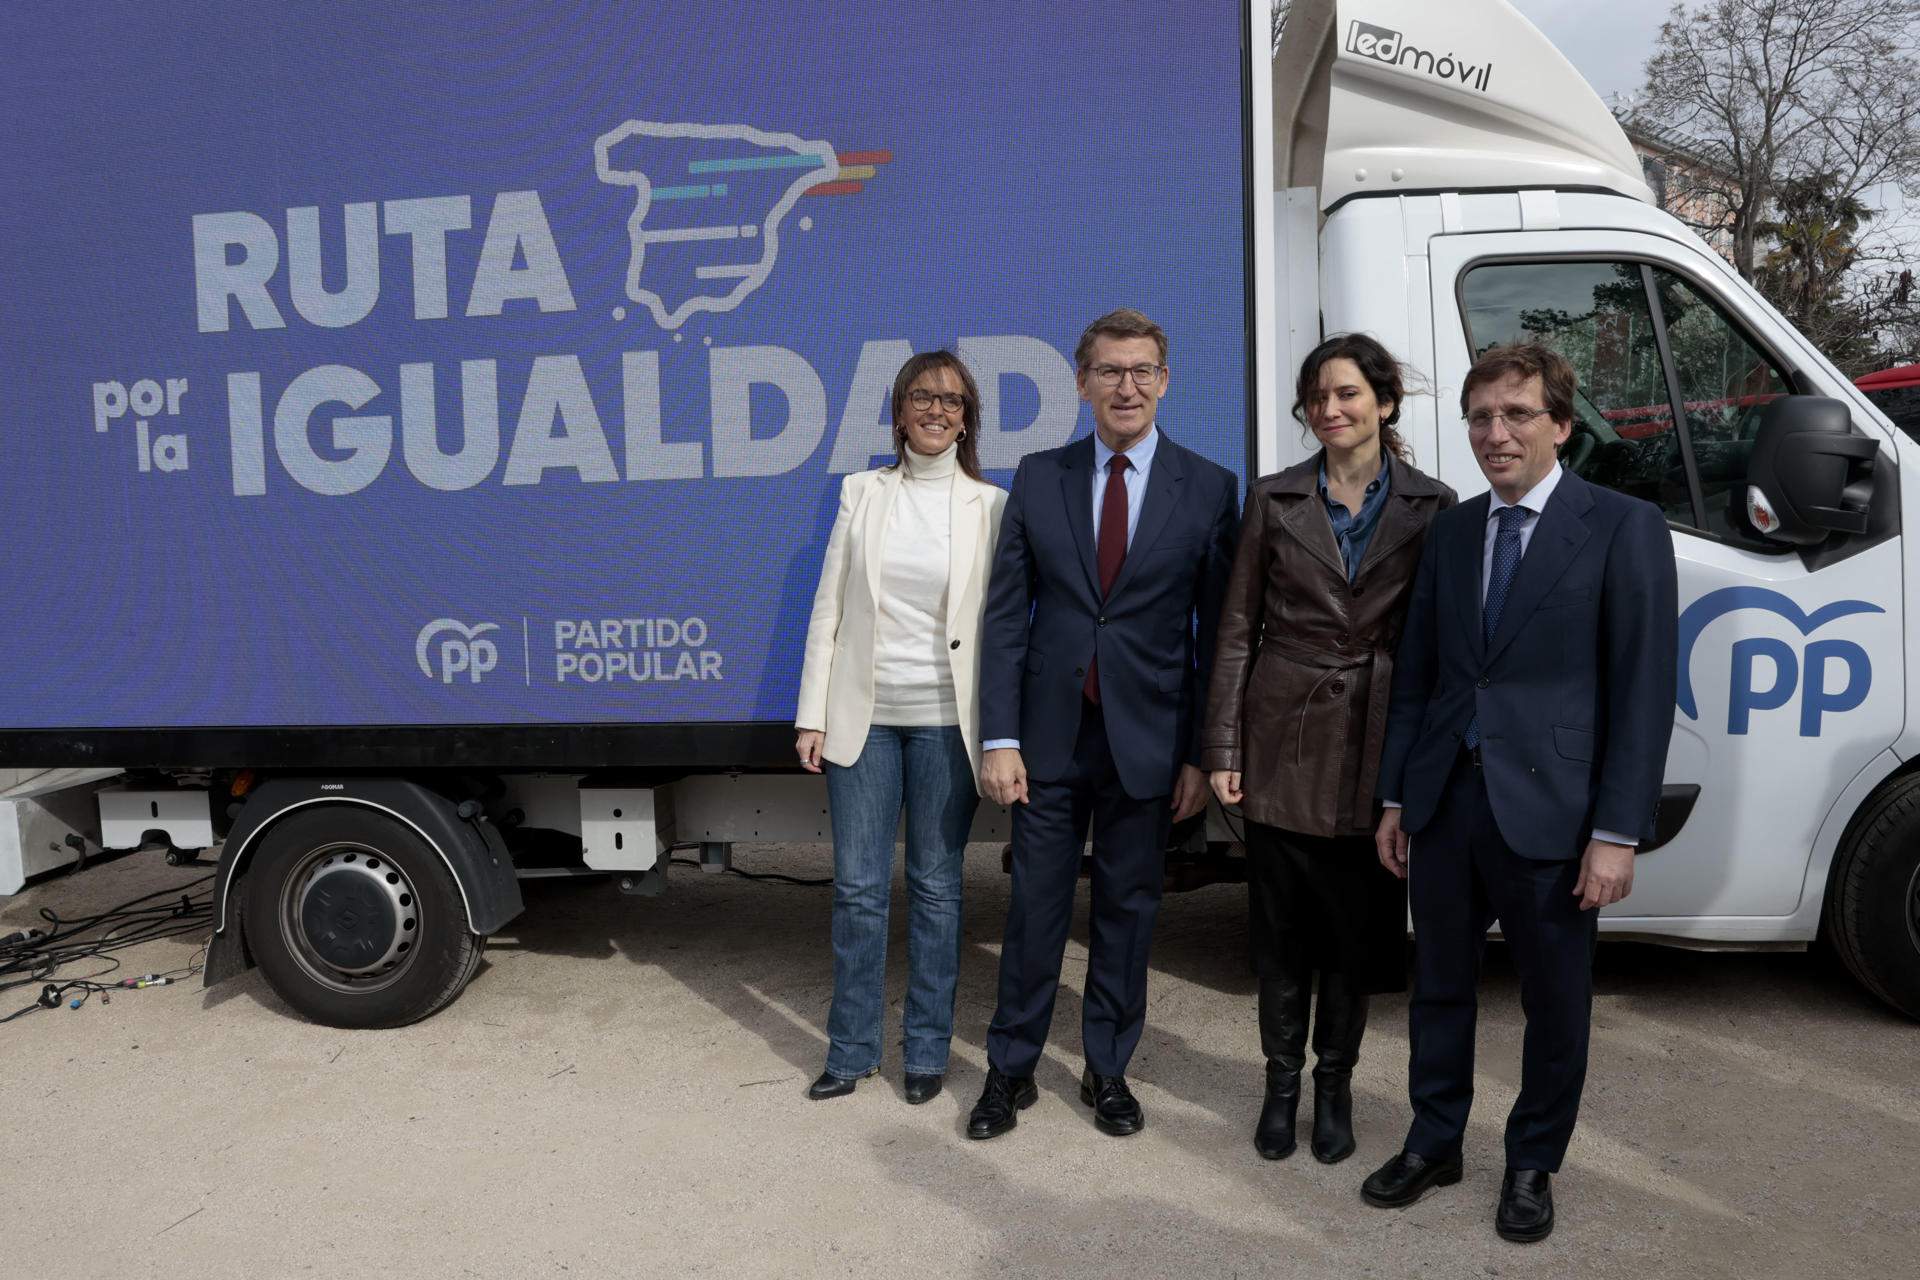 La “Ruta per la igualtat” del PP: dos autobusos per tot Espanya contra la llei d’amnistia